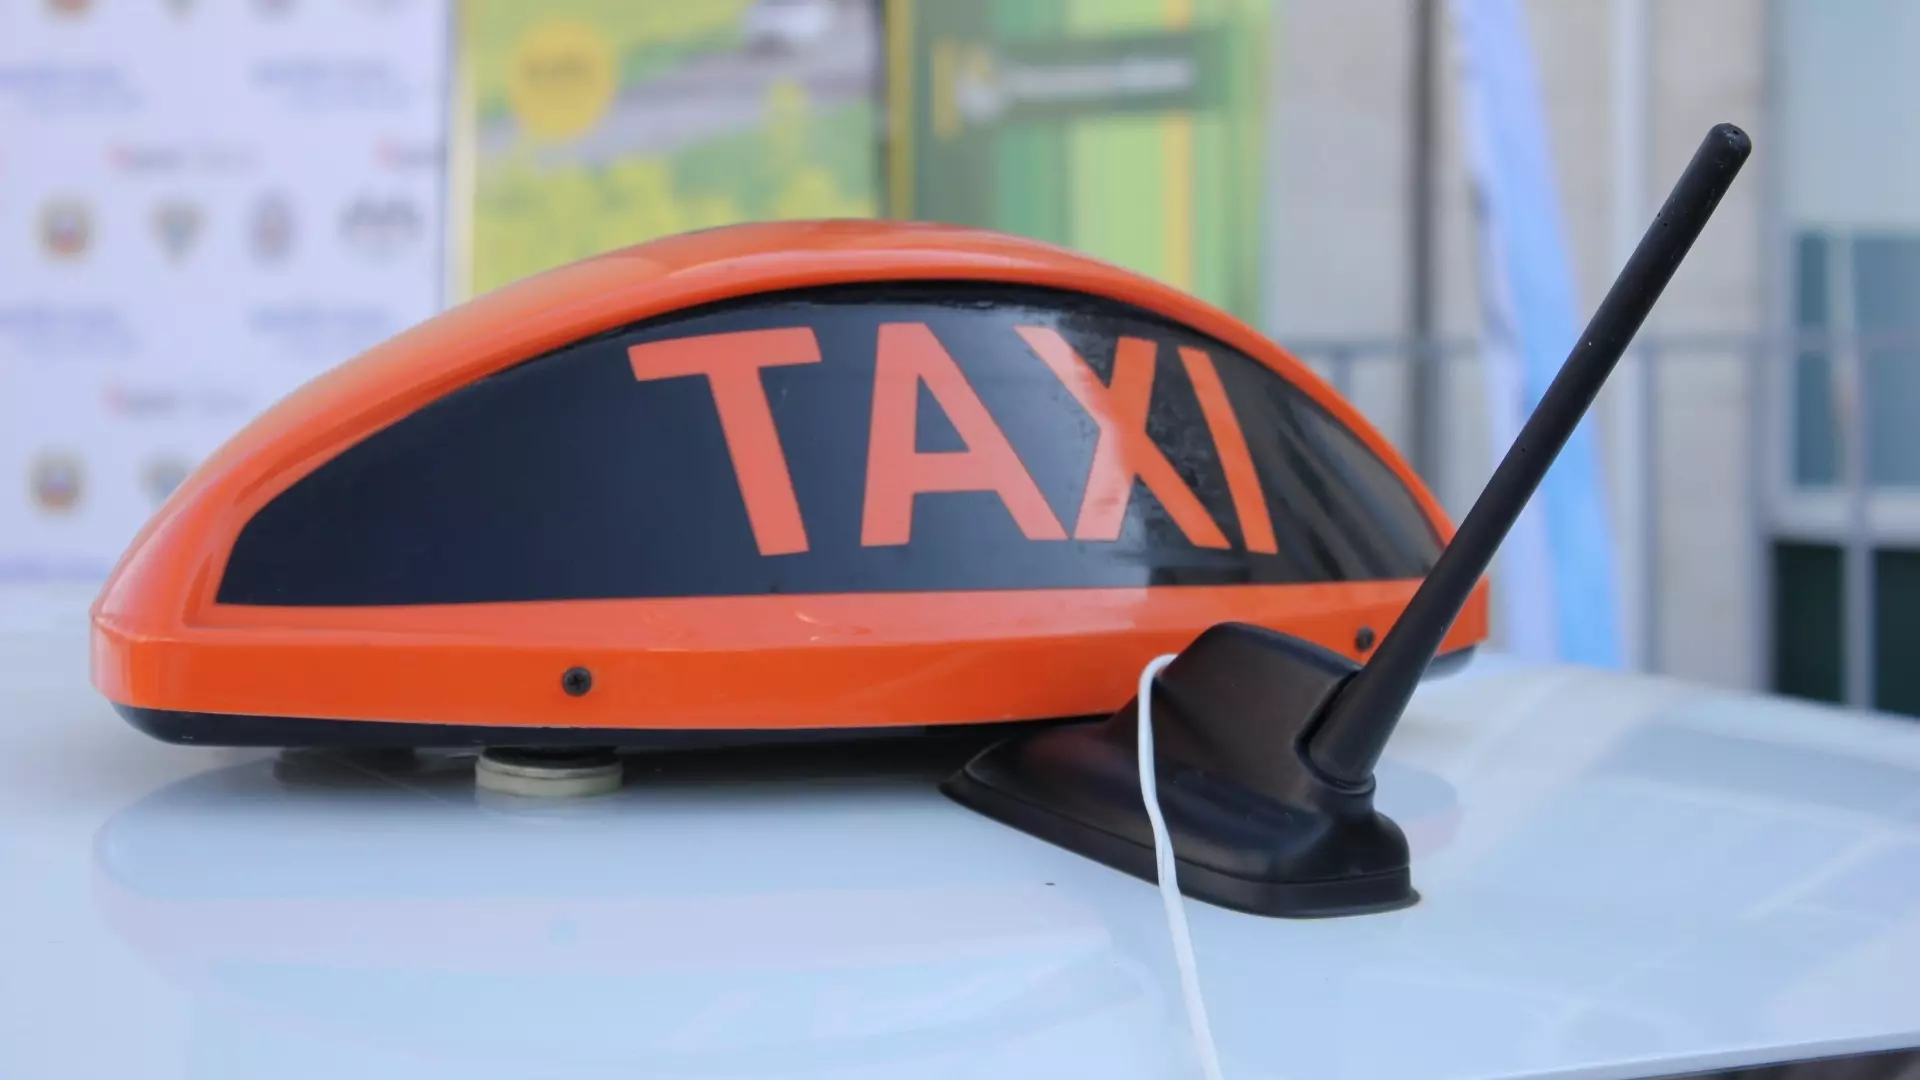 Услуги такси подорожали в Нижегородской области